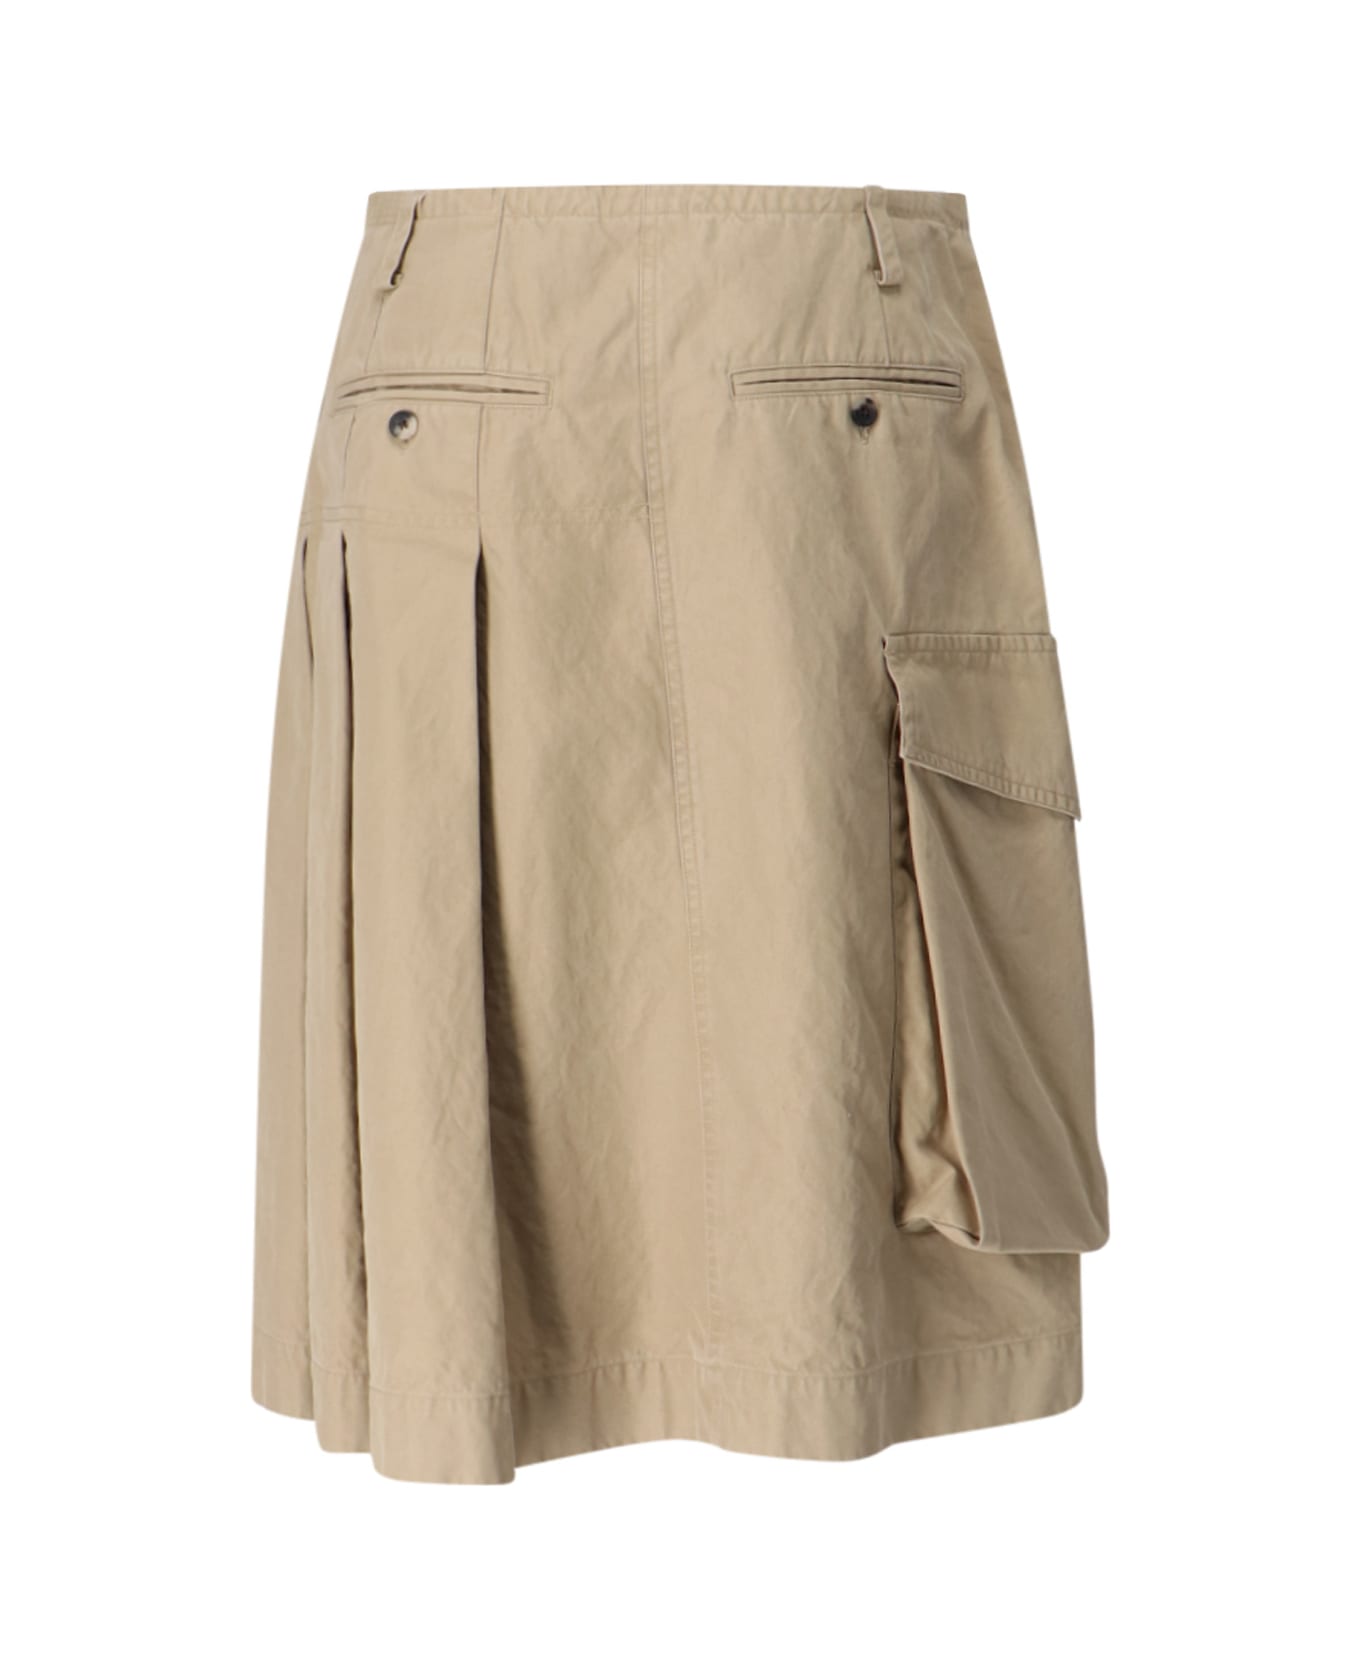 Dries Van Noten Kilt Design Skirt - Beige